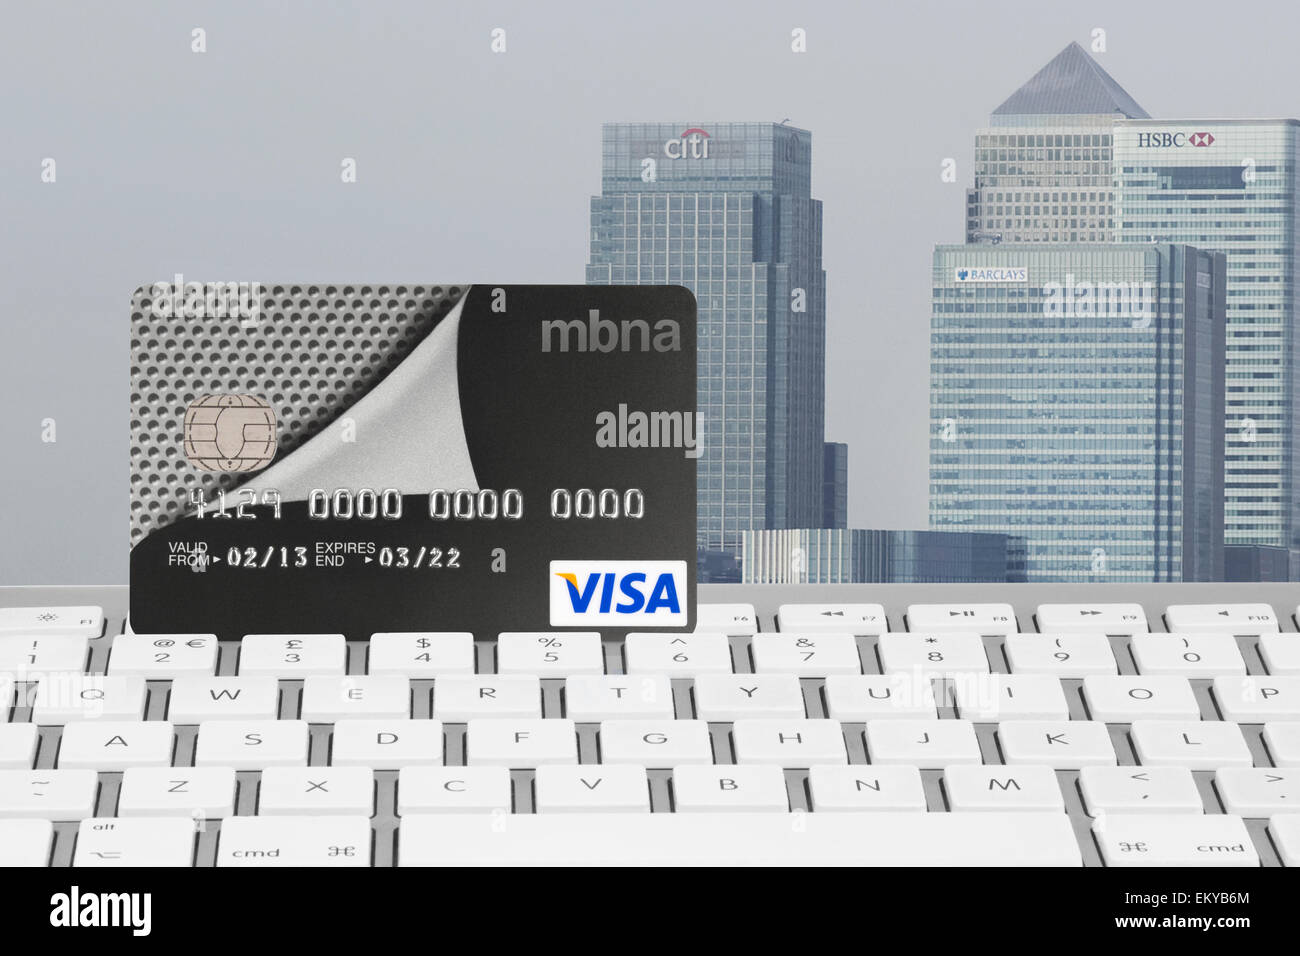 MBNA Visa carta bancaria sulla tastiera di un computer con Canary Wharf Financial District in background Foto Stock